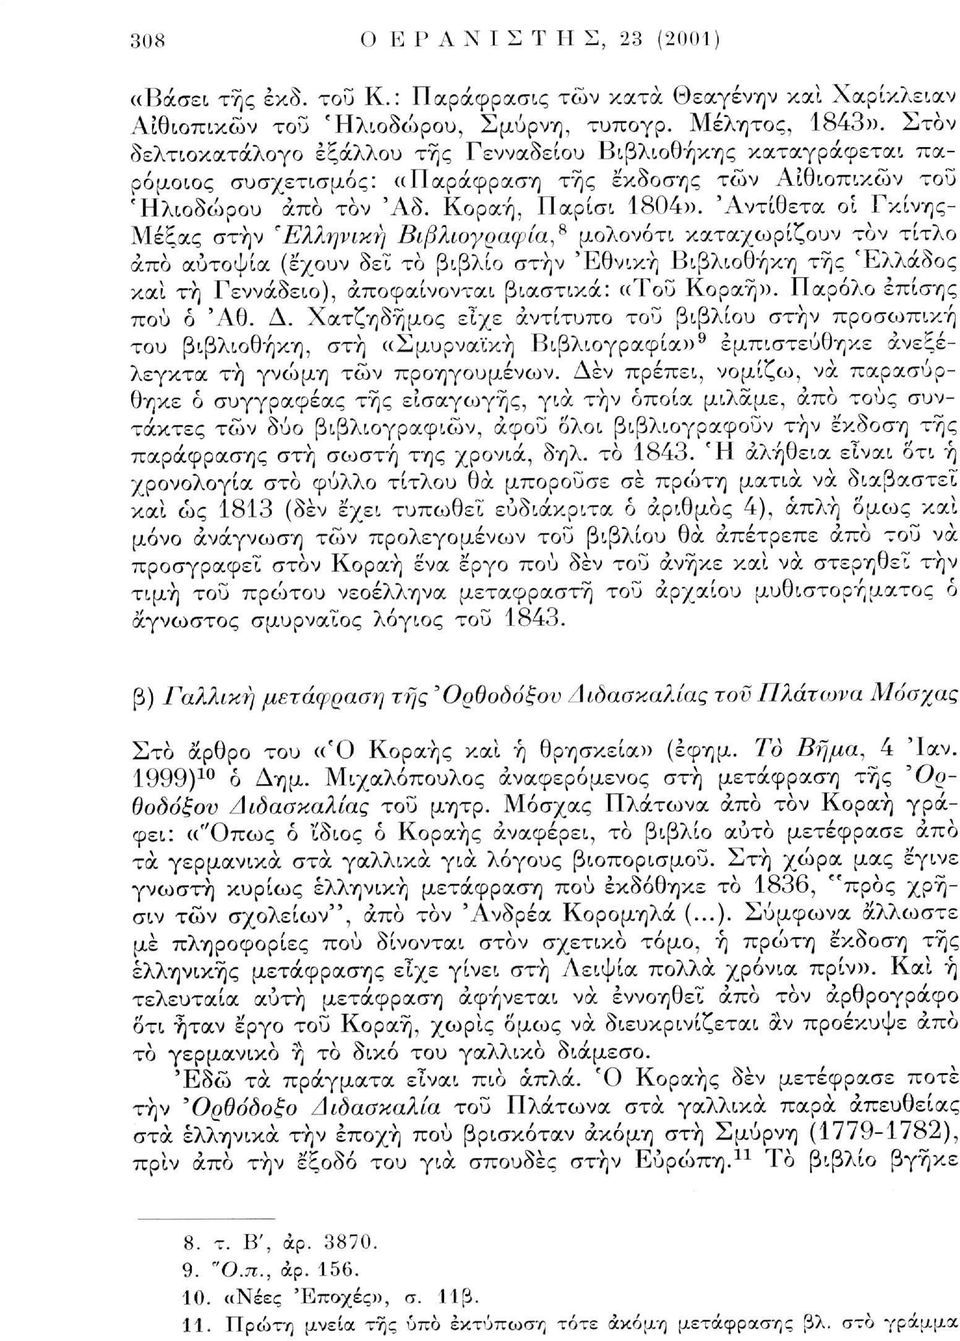 'Αντίθετα οι Γκίνης- Μέξας στην 'Ελληνική Βιβλιογραφία* μολονότι καταχωρίζουν τον τίτλο άπο αυτοψία (έχουν δει το βιβλίο στην Εθνική Βιβλιοθήκη της Ελλάδος και τη Γεννάδειο), αποφαίνονται βιαστικά: